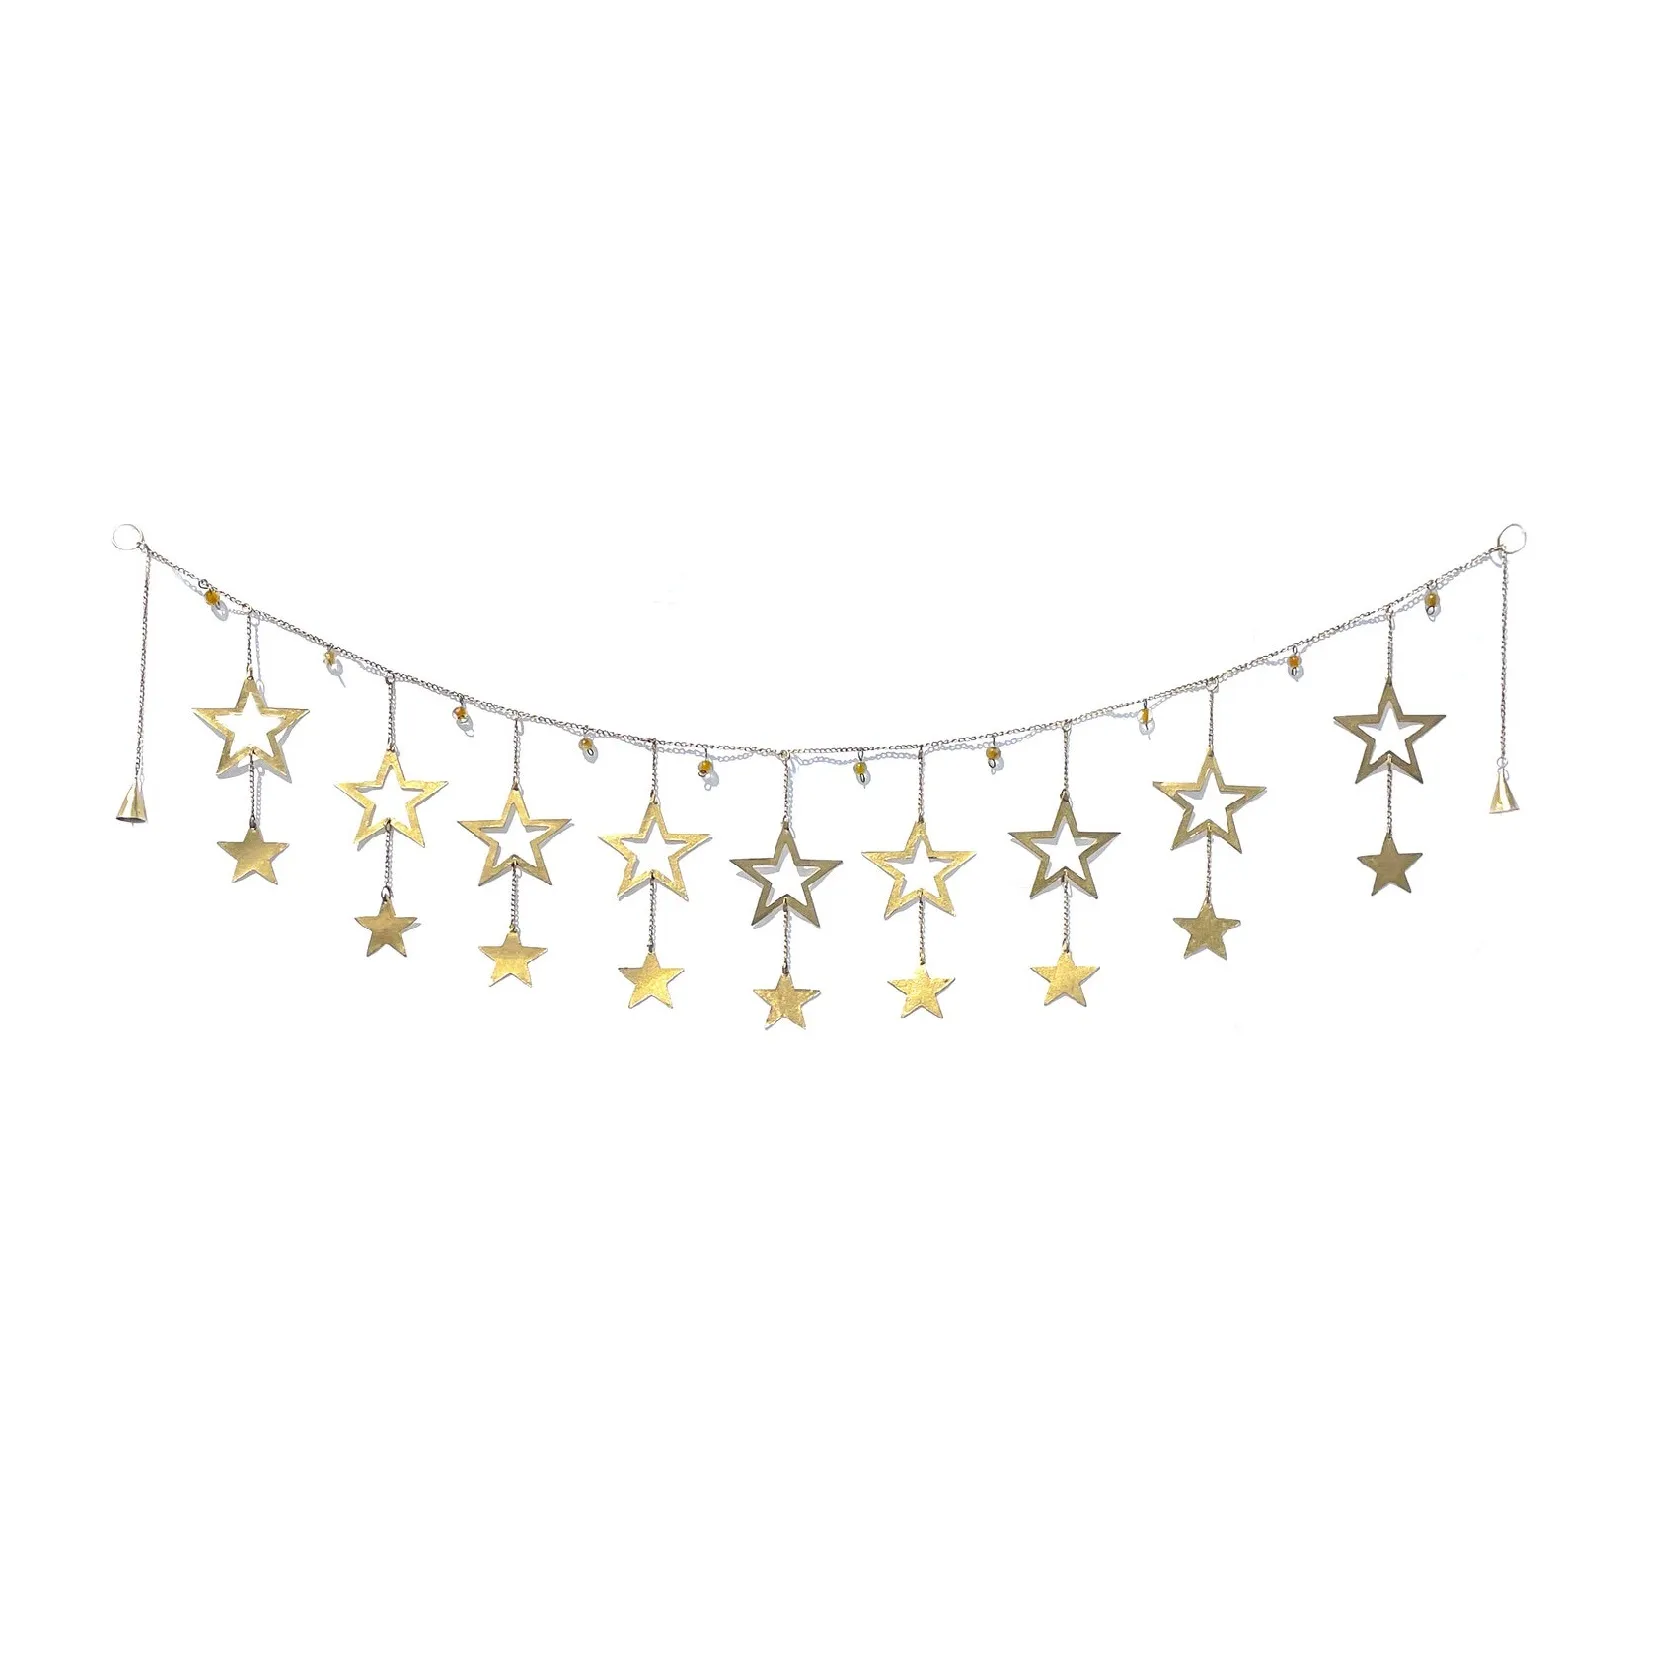 La guirlande murale à étoiles filantes comprend deux niveaux d'étoiles dorées avec des perles dorées parfaites pour améliorer tout type de décoration intérieure